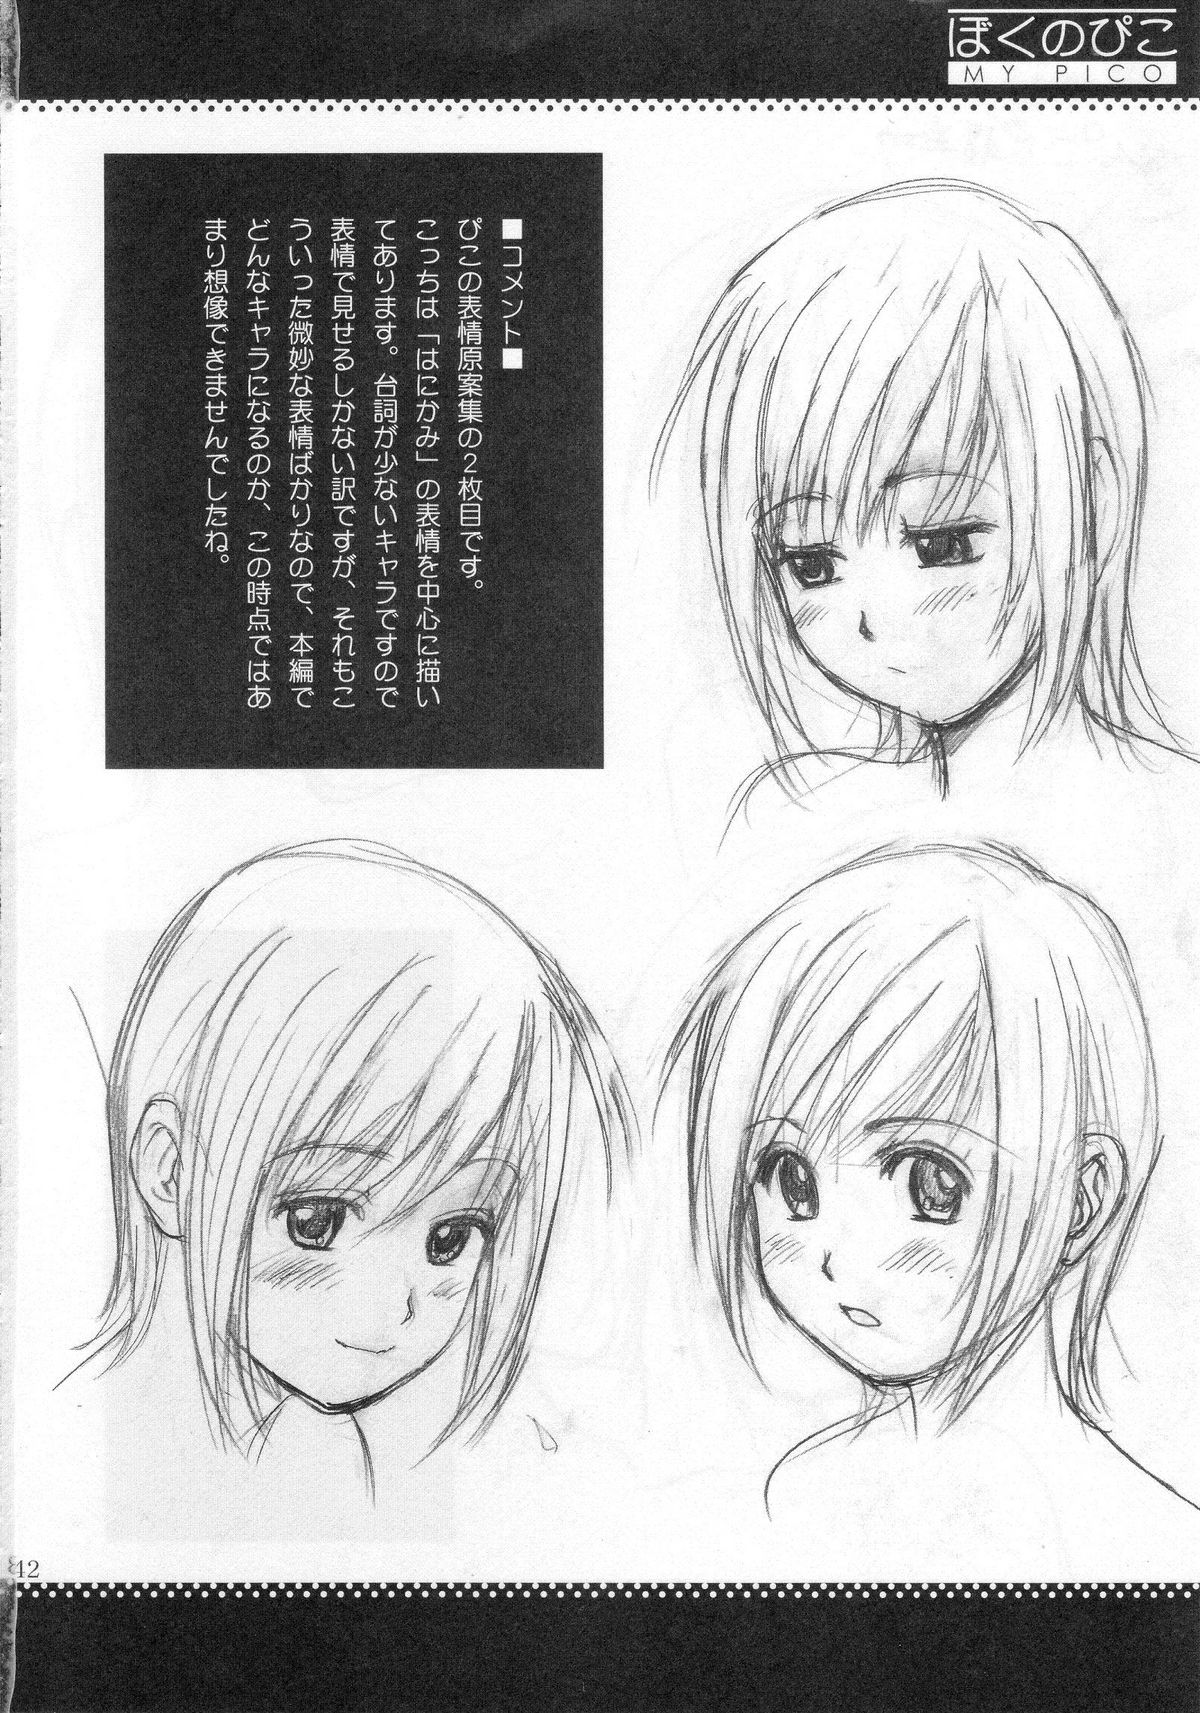 (COMIC1) [Saigado] Boku no Pico Comic + Koushiki Character Genanshuu (Boku no Pico) page 40 full